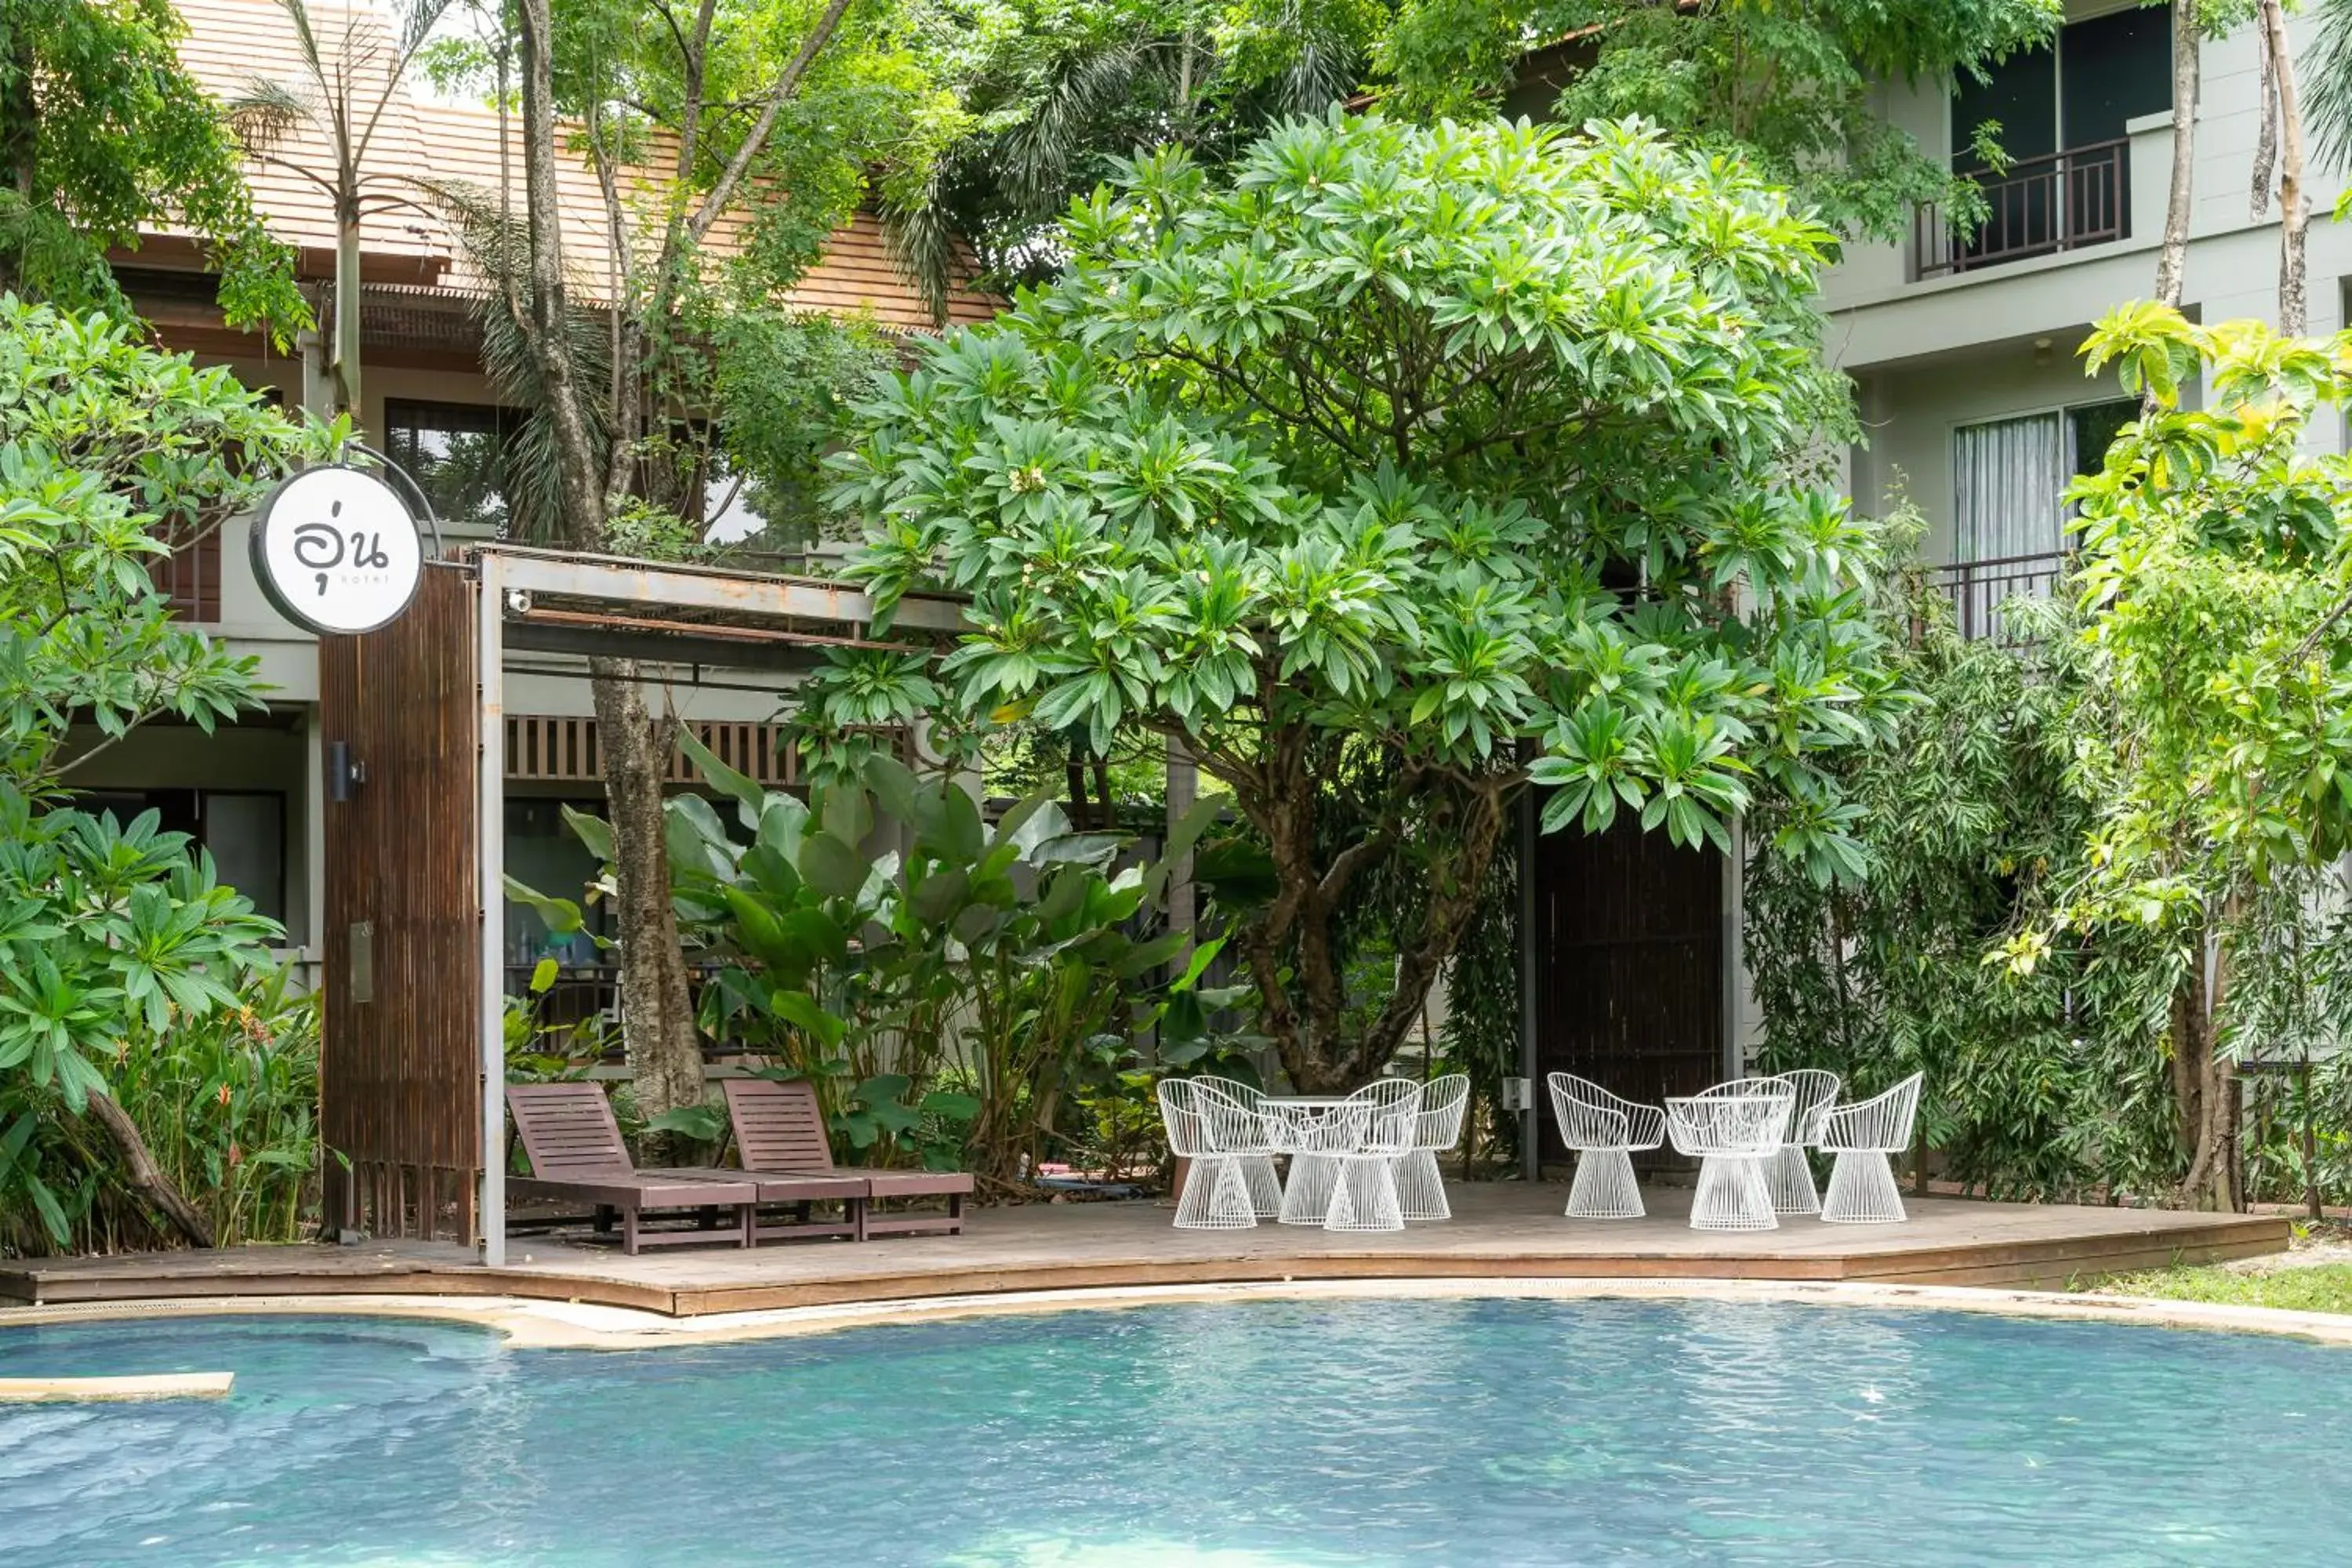 Swimming Pool in Oun Hotel Bangkok